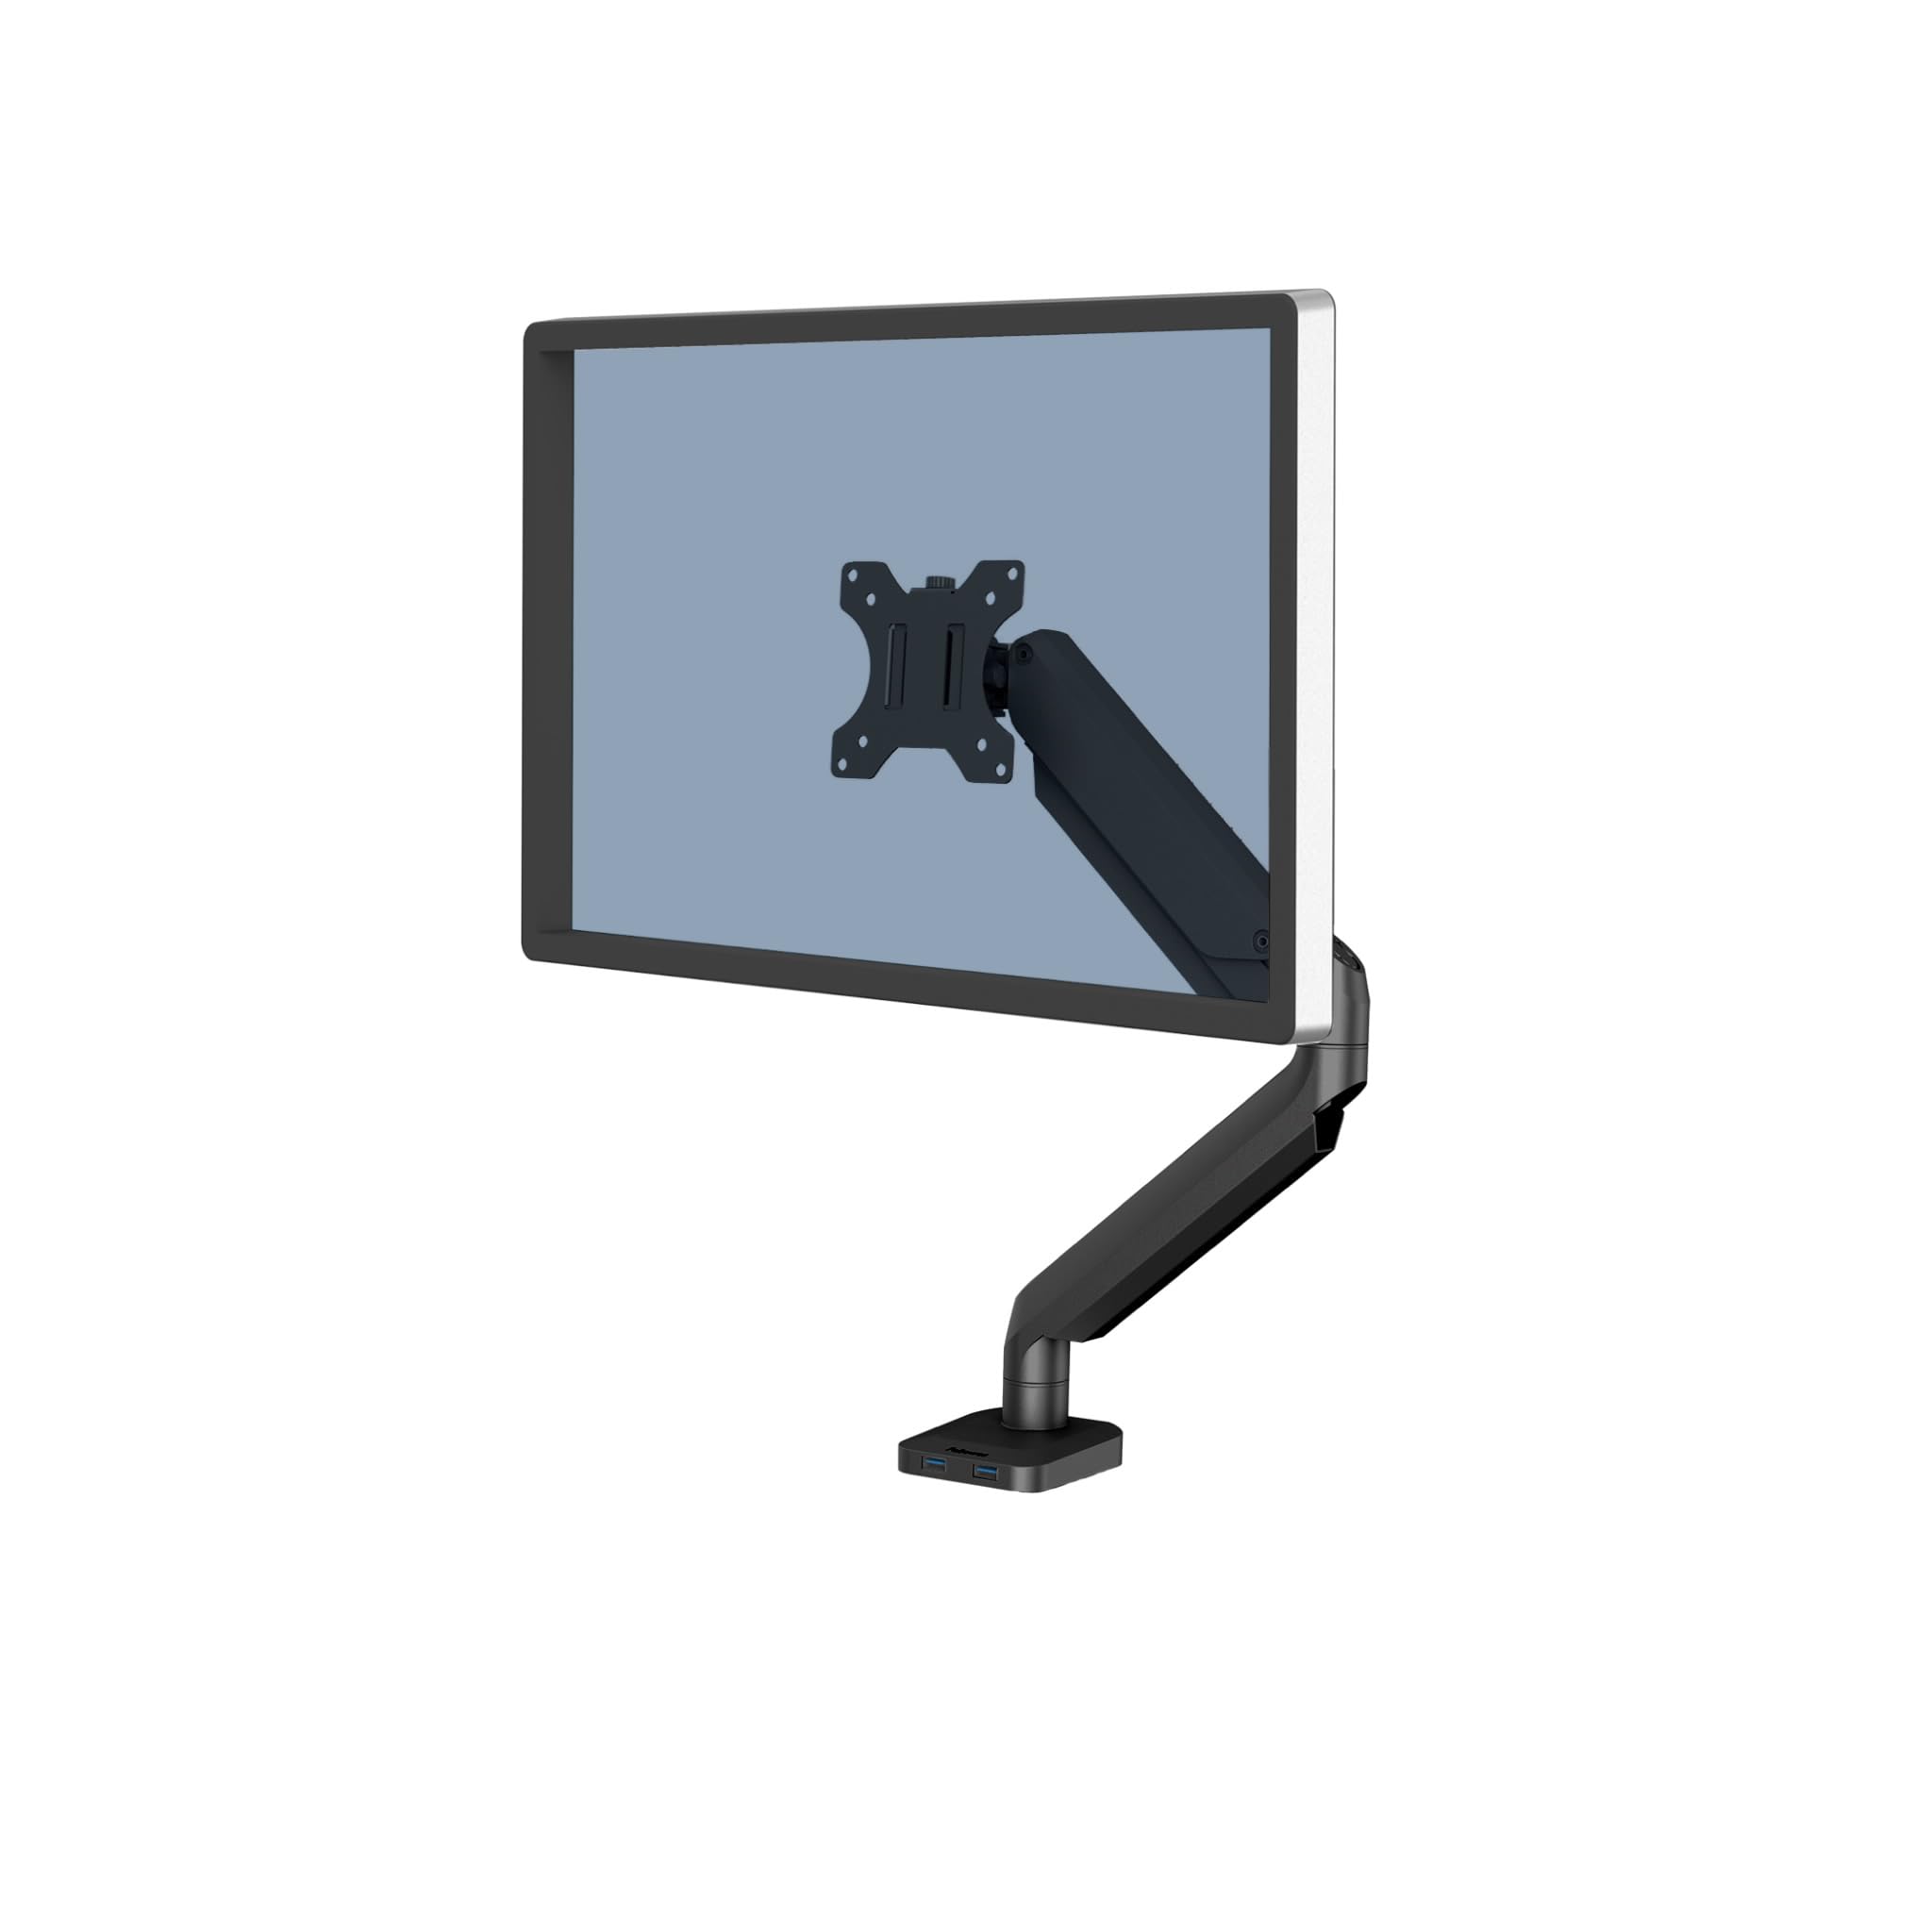 Fellowes Monitor Halterung für 1 Bildschirm bis 32 Zoll (81,28 cm) - Platinum Series Monitor Arm mit Gasfeder, USB Ports - Befestigung mit Klemme oder Kabeldurchlass - schwarz